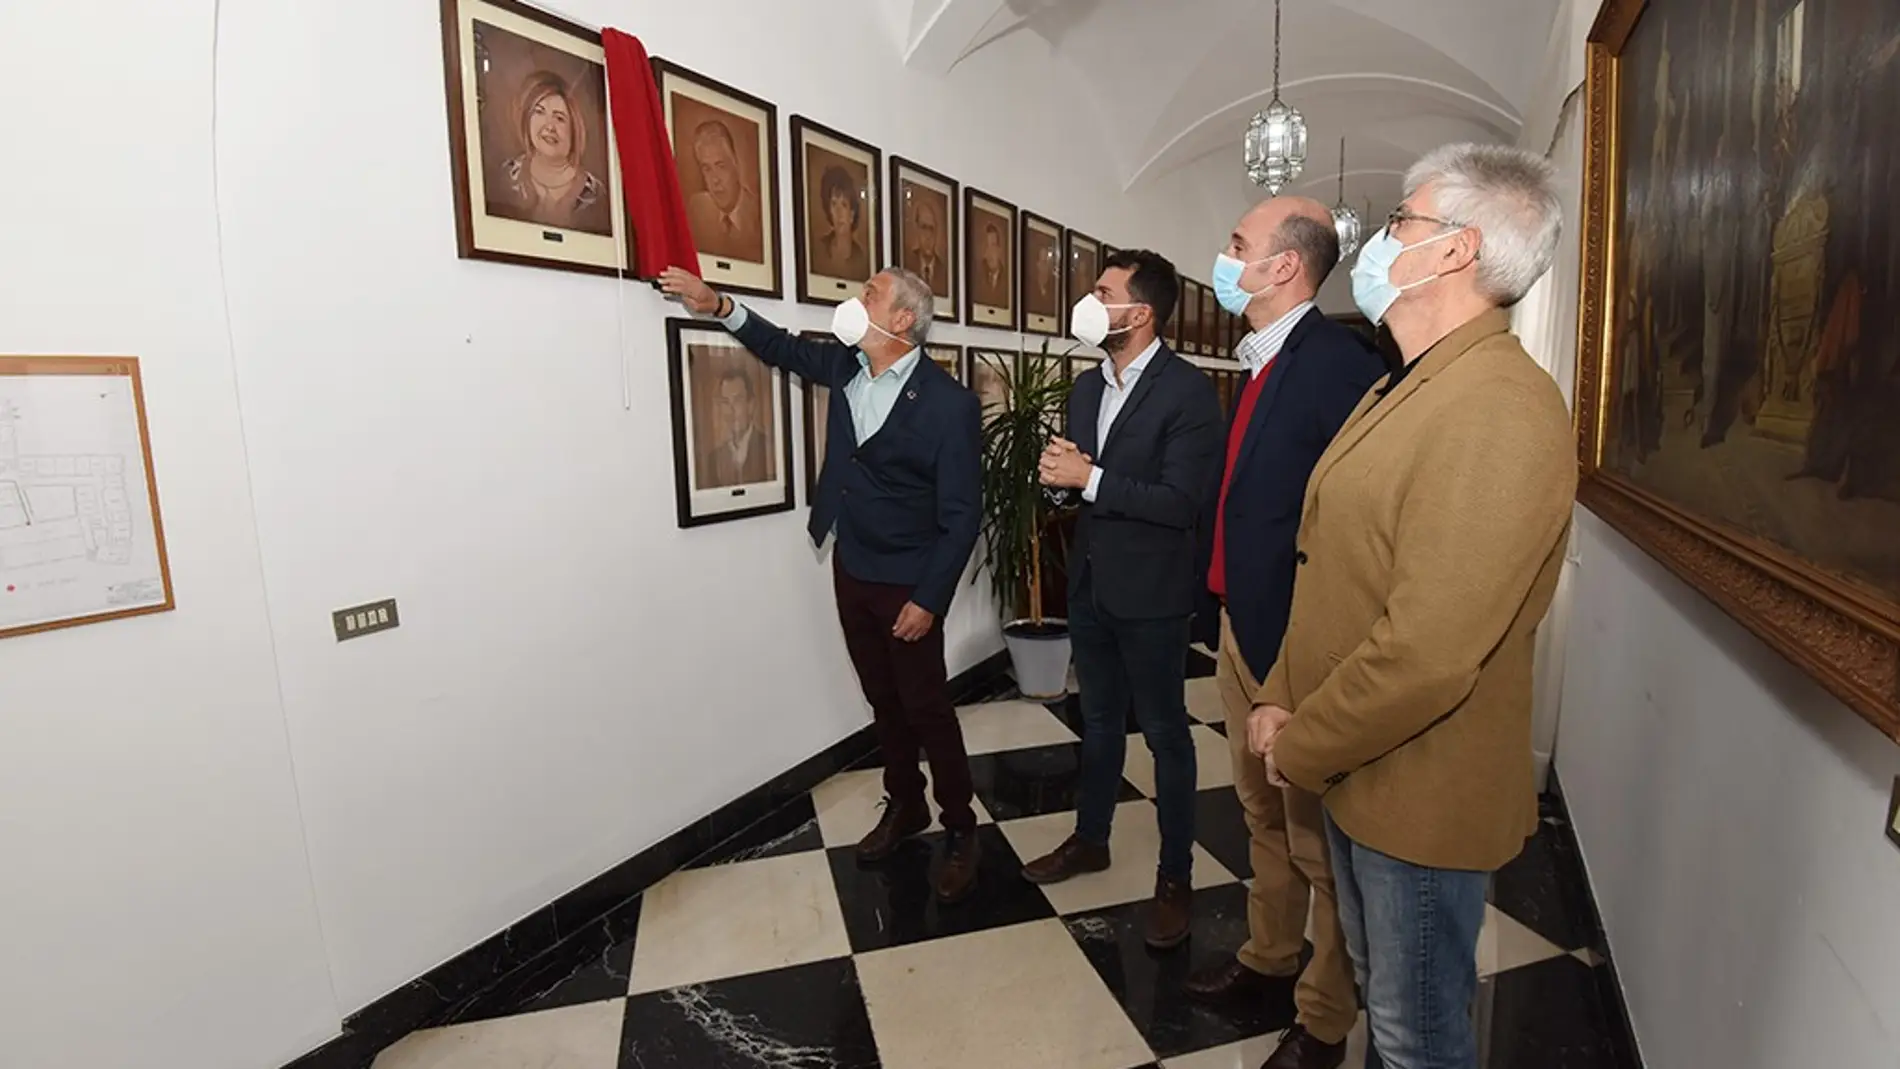 La Diputación de Cáceres coloca el cuadro de Charo Cordero en la galería de presidentes